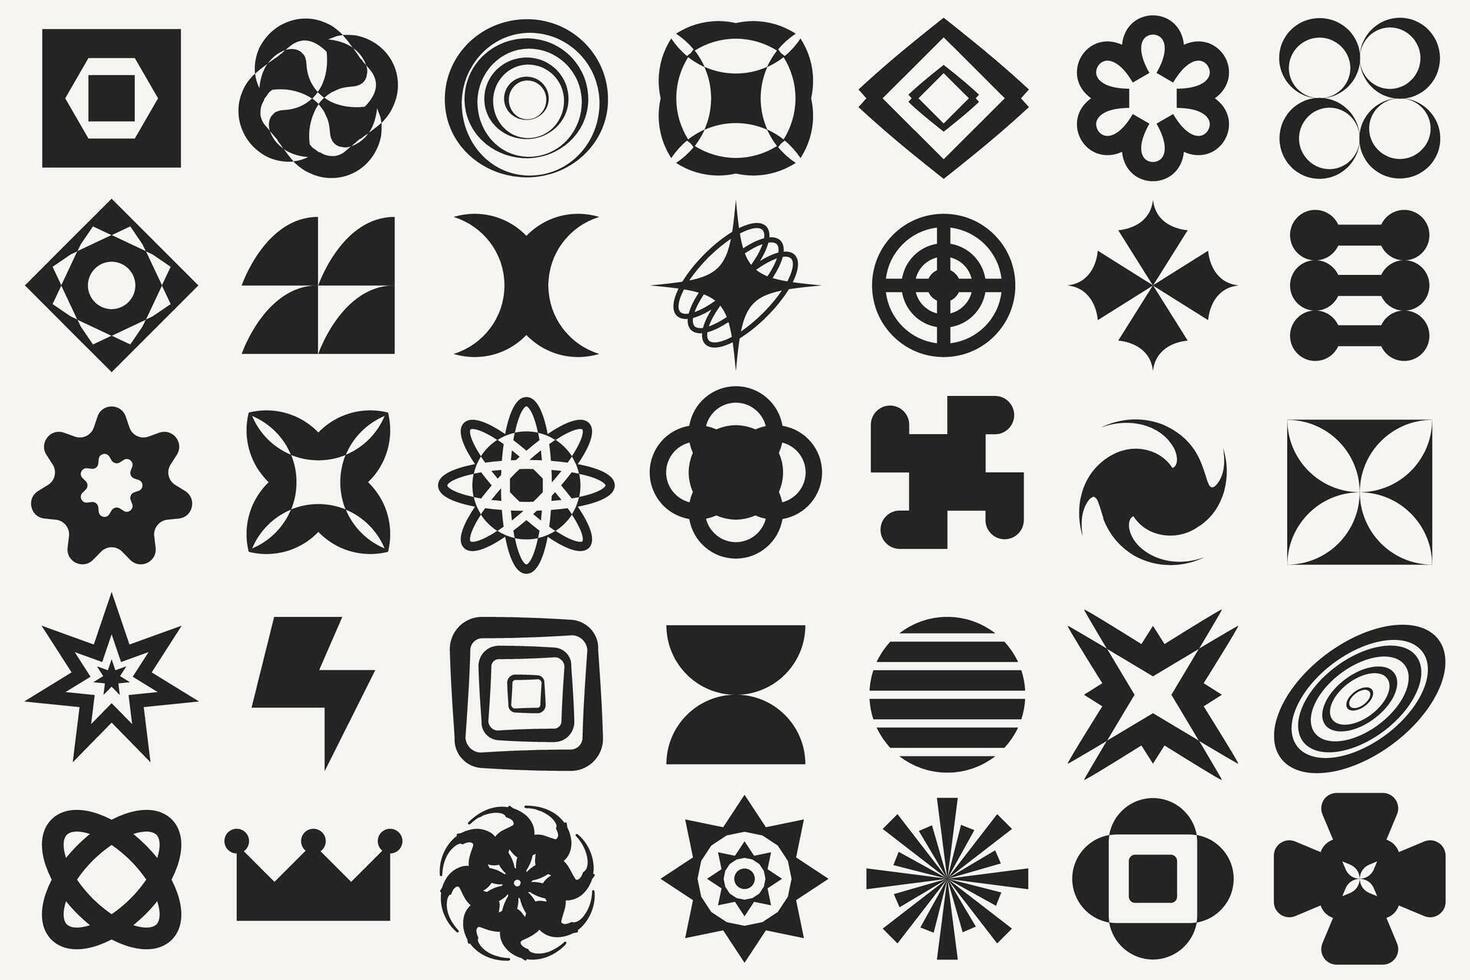 retro futuristische elementen voor ontwerp. groot verzameling van abstract grafisch meetkundig symbolen en voorwerpen in y2k stijl. Sjablonen voor streetwear merk. vector illustratie